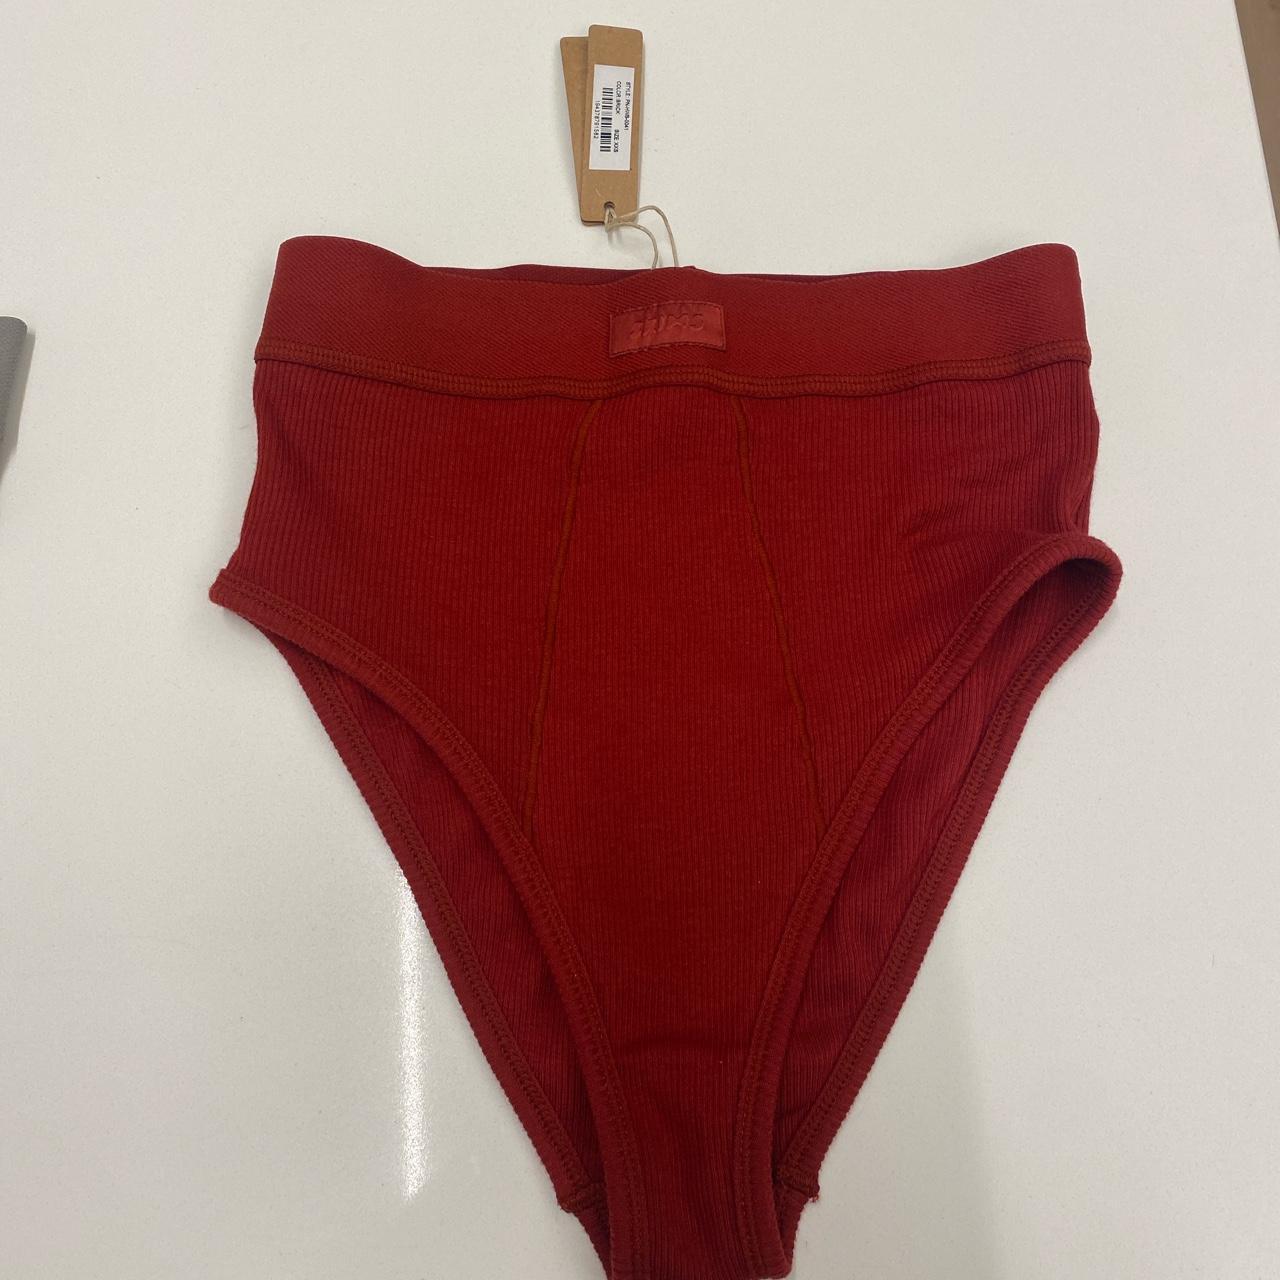 Skims underwear BRIEFS, Red undies in color red